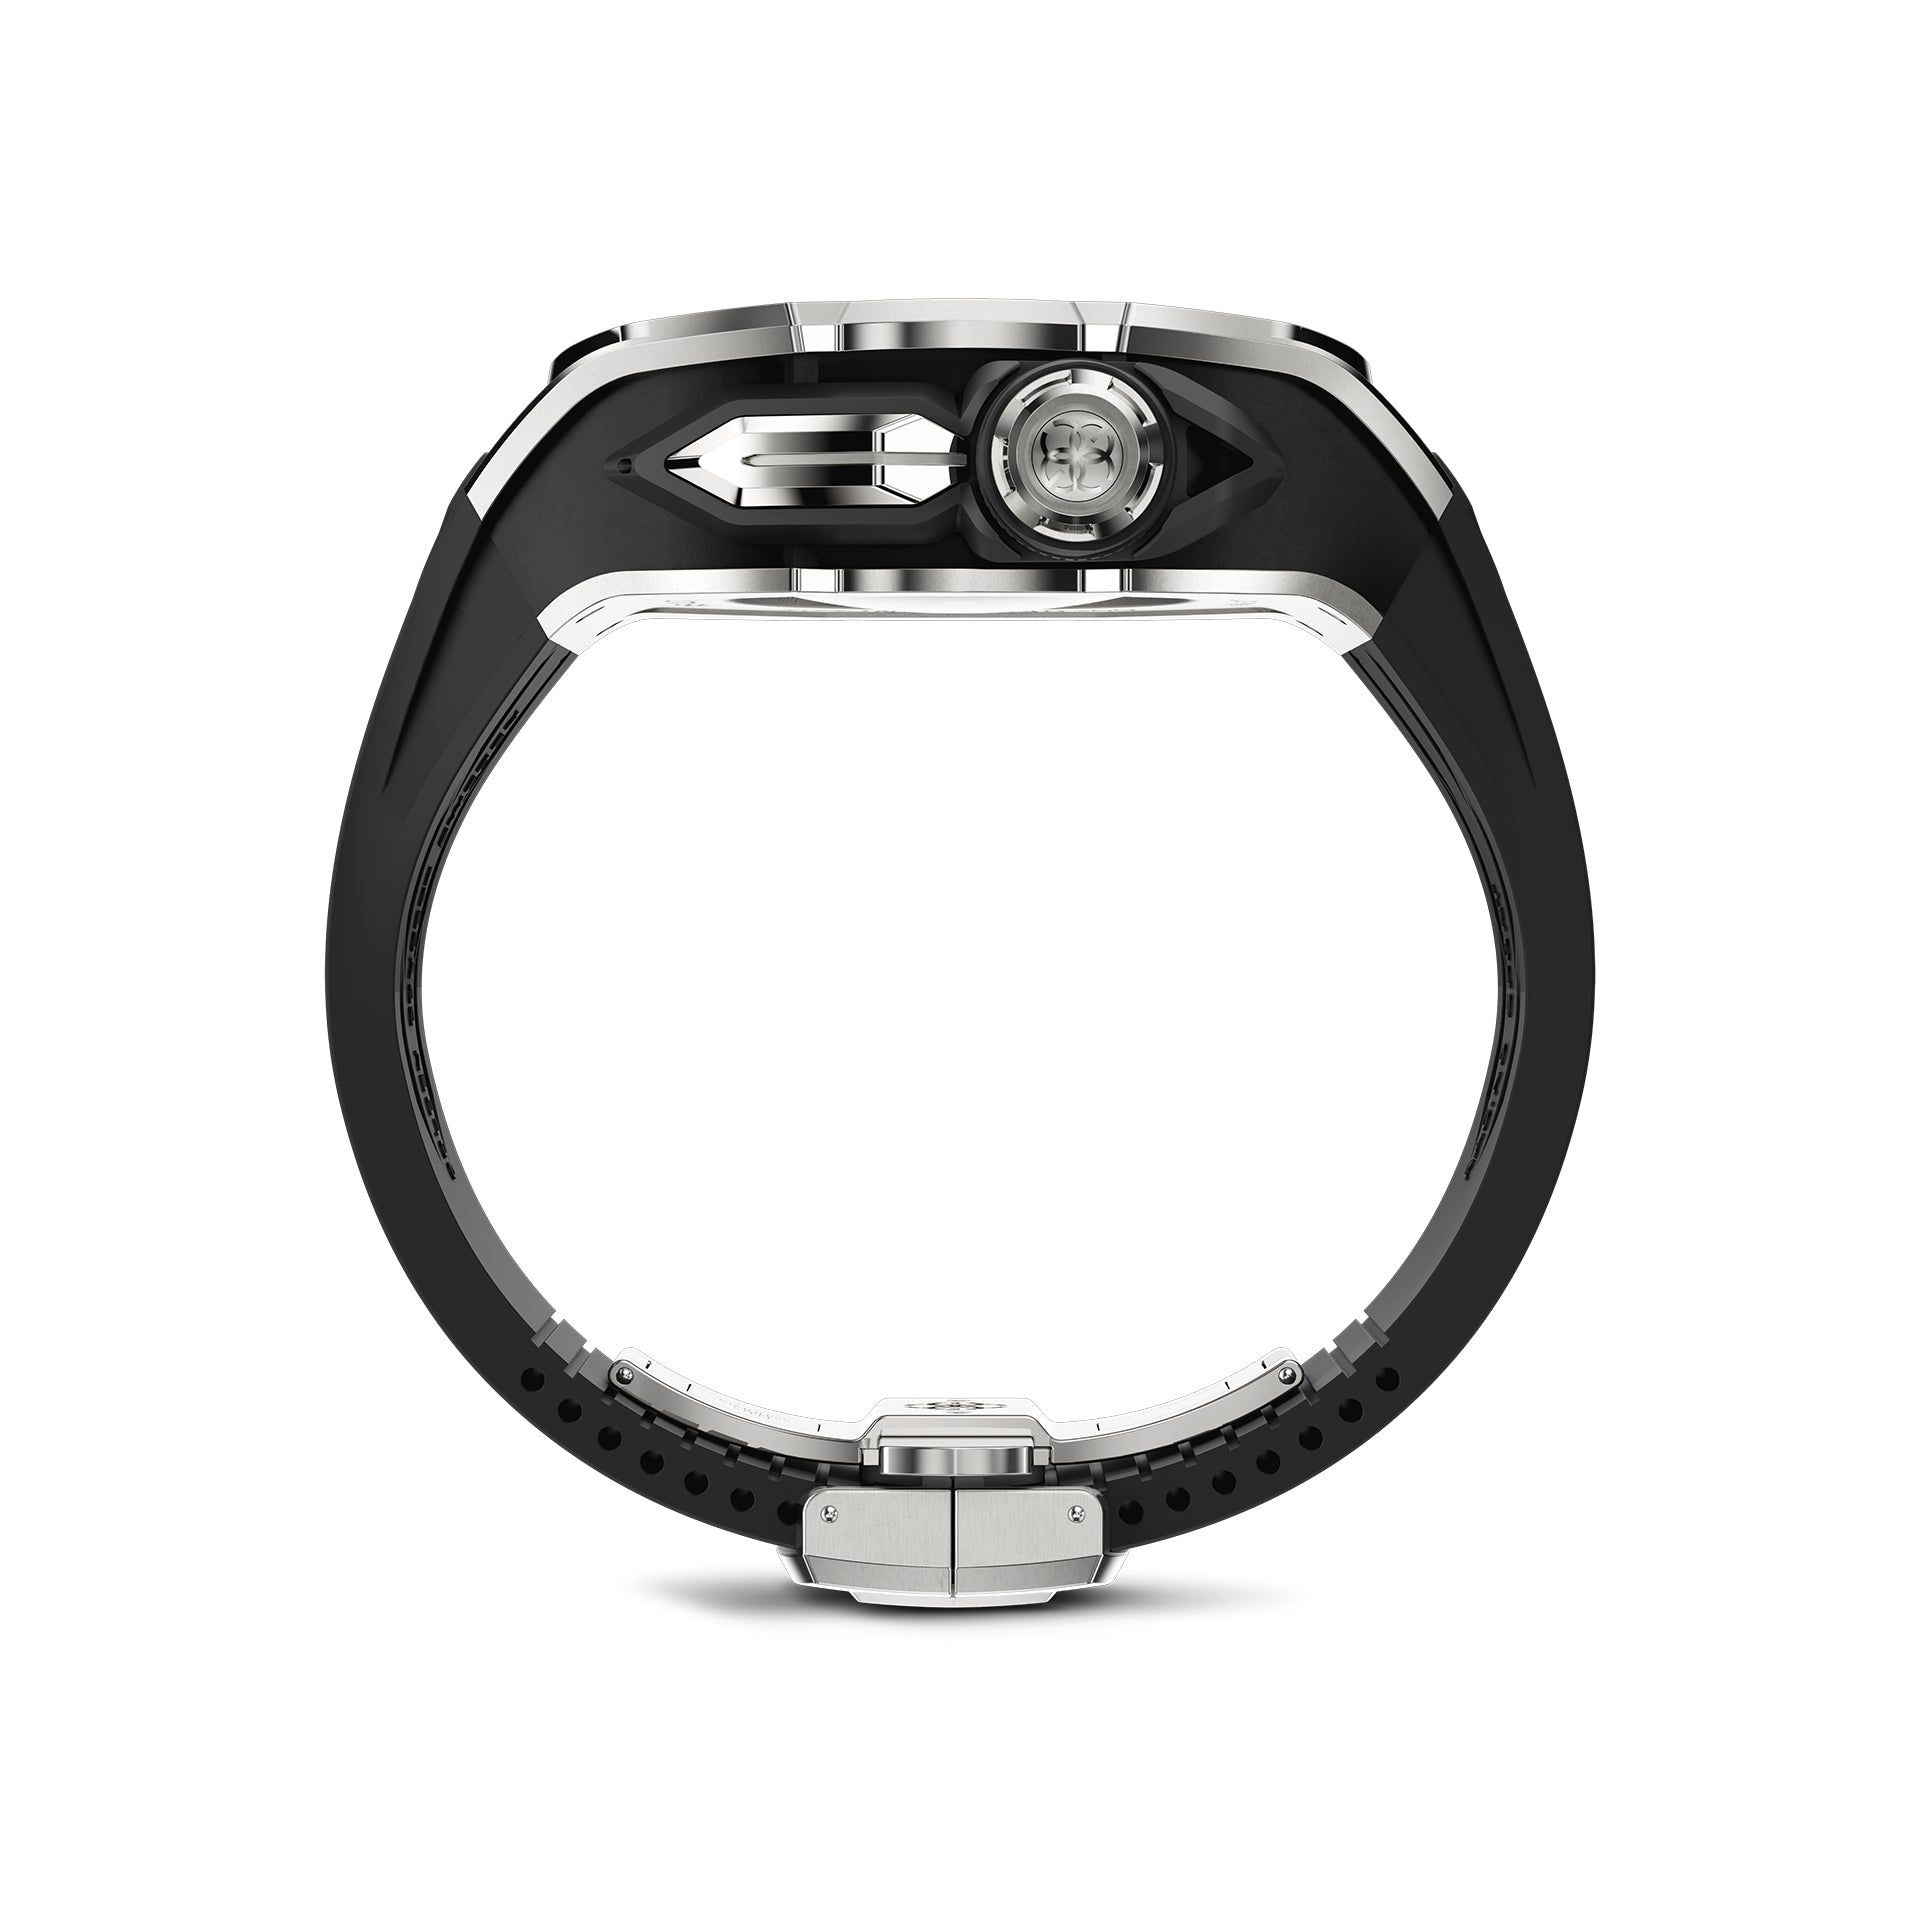 Apple Watch Ultra Case - RST49 - Silver Steel (Black Rubber)